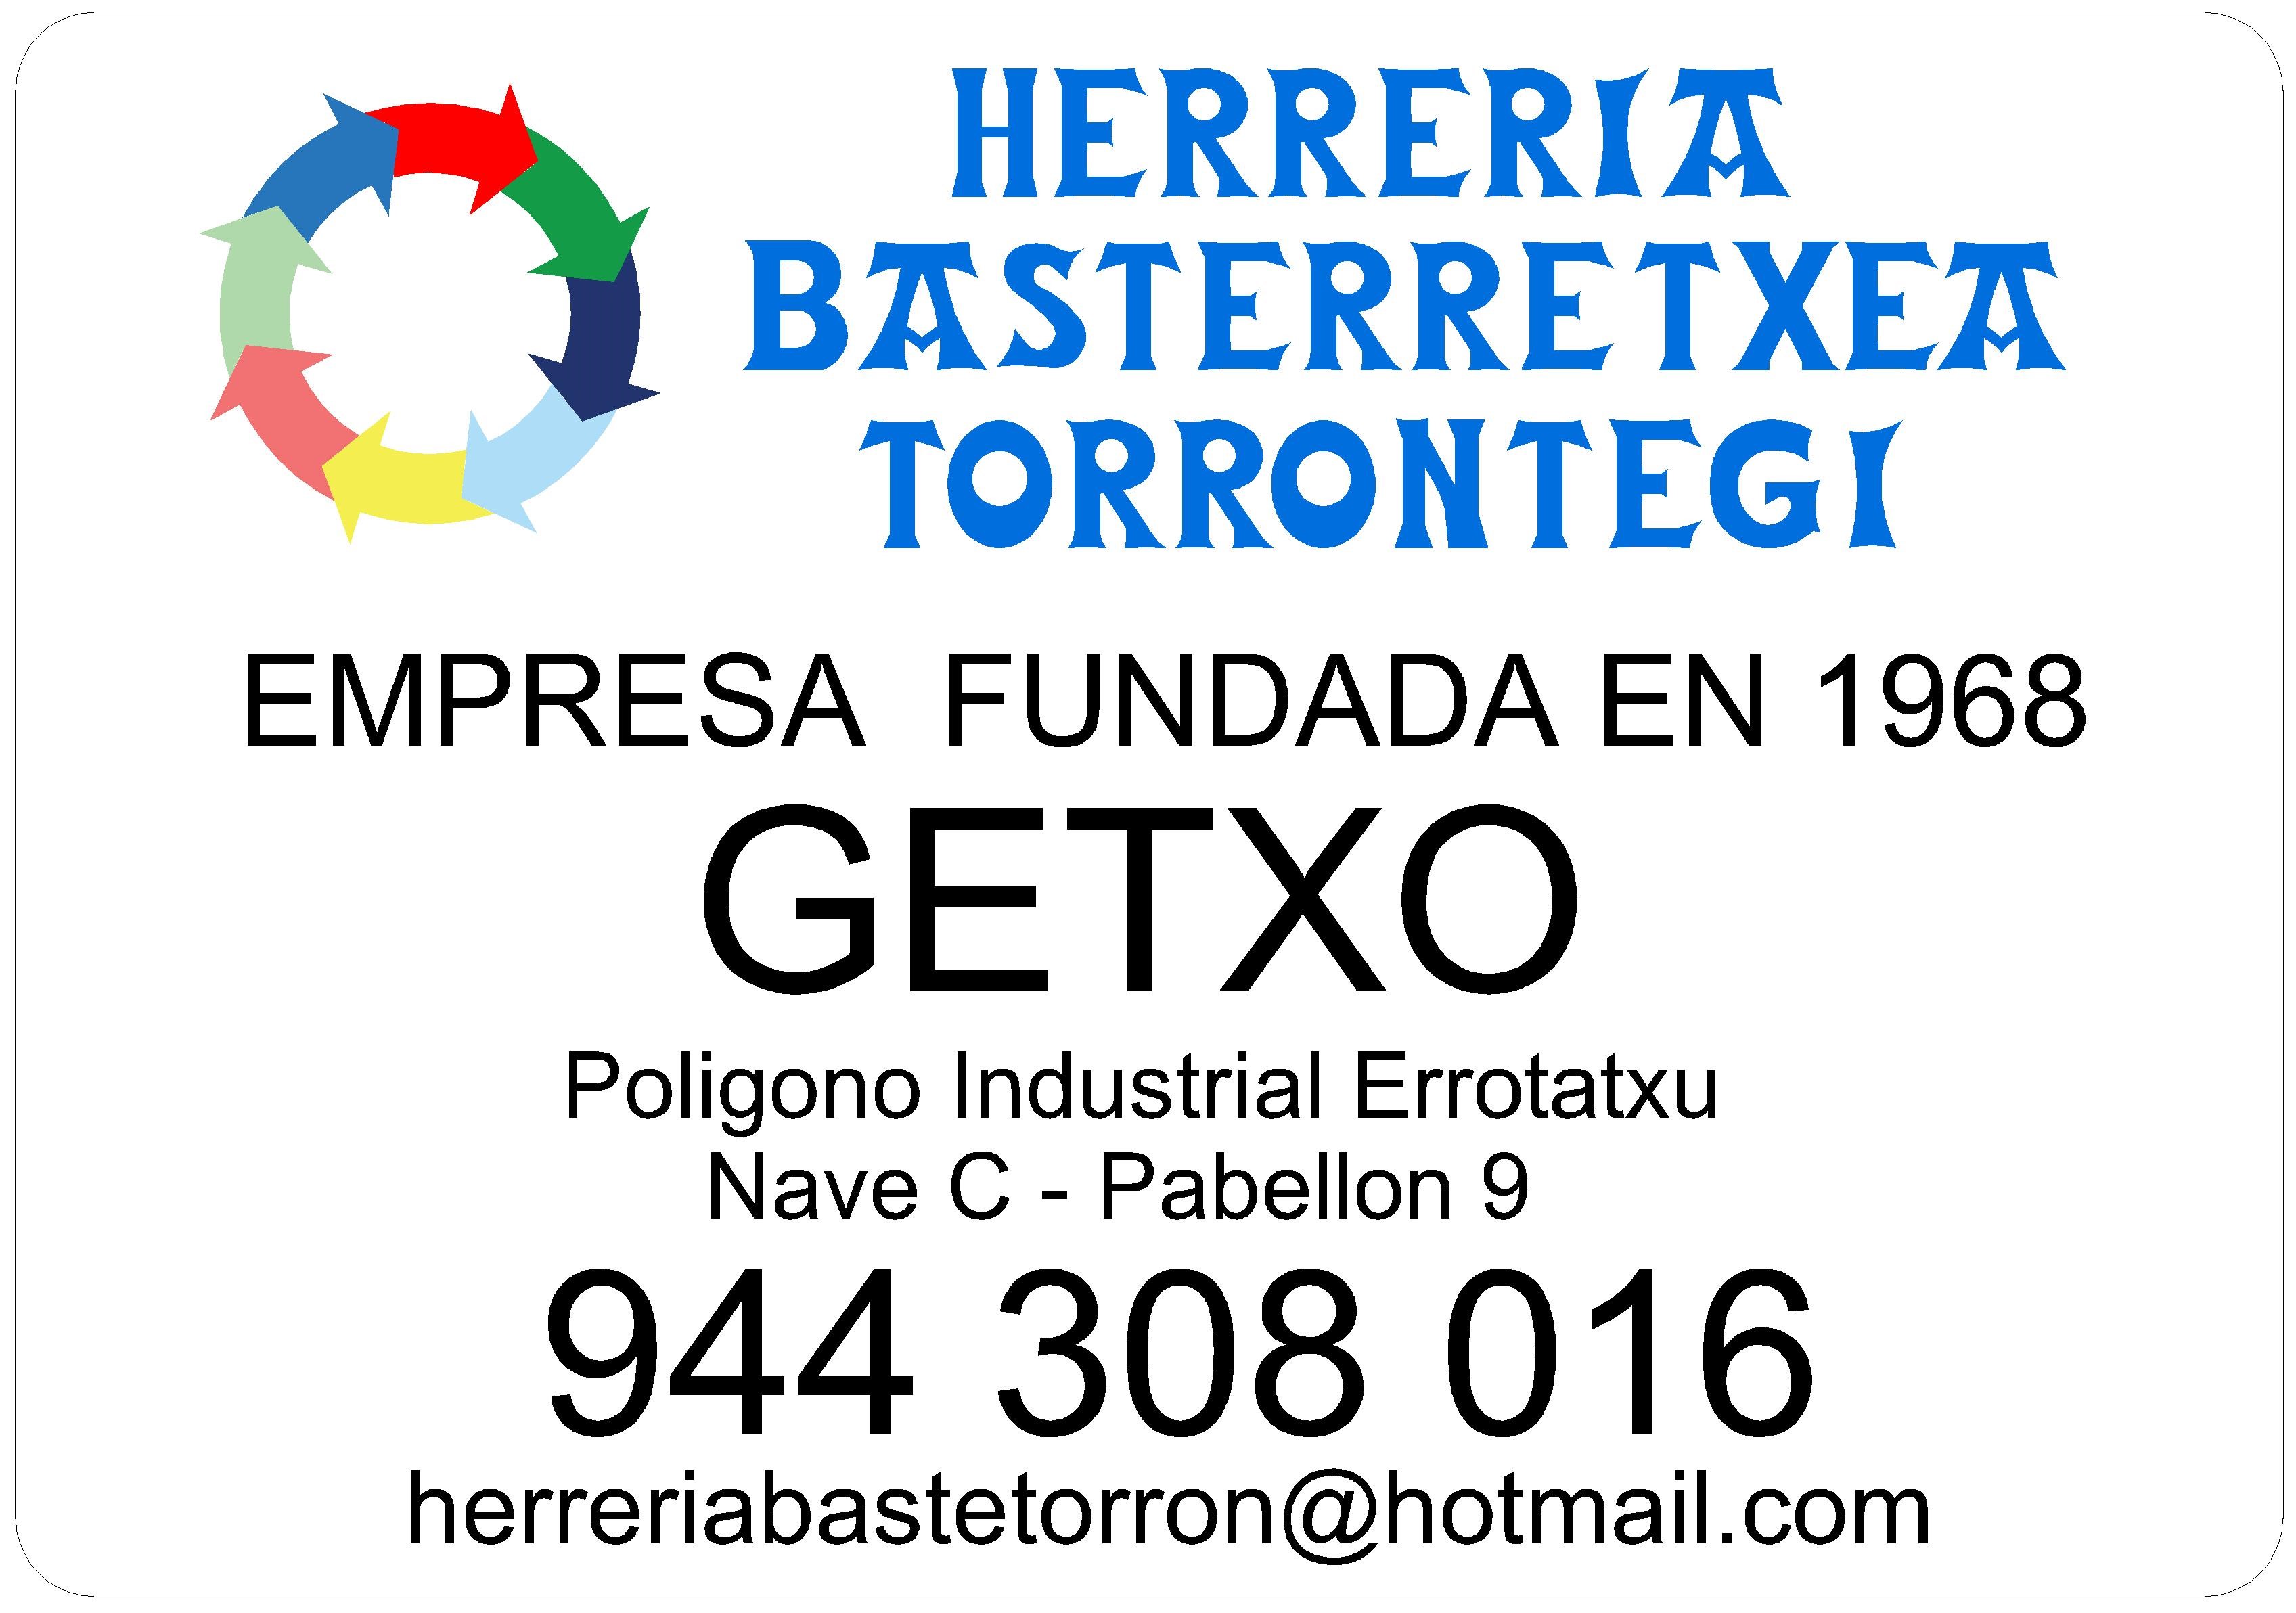 Images Herrería Basterretxea-Torrontegui